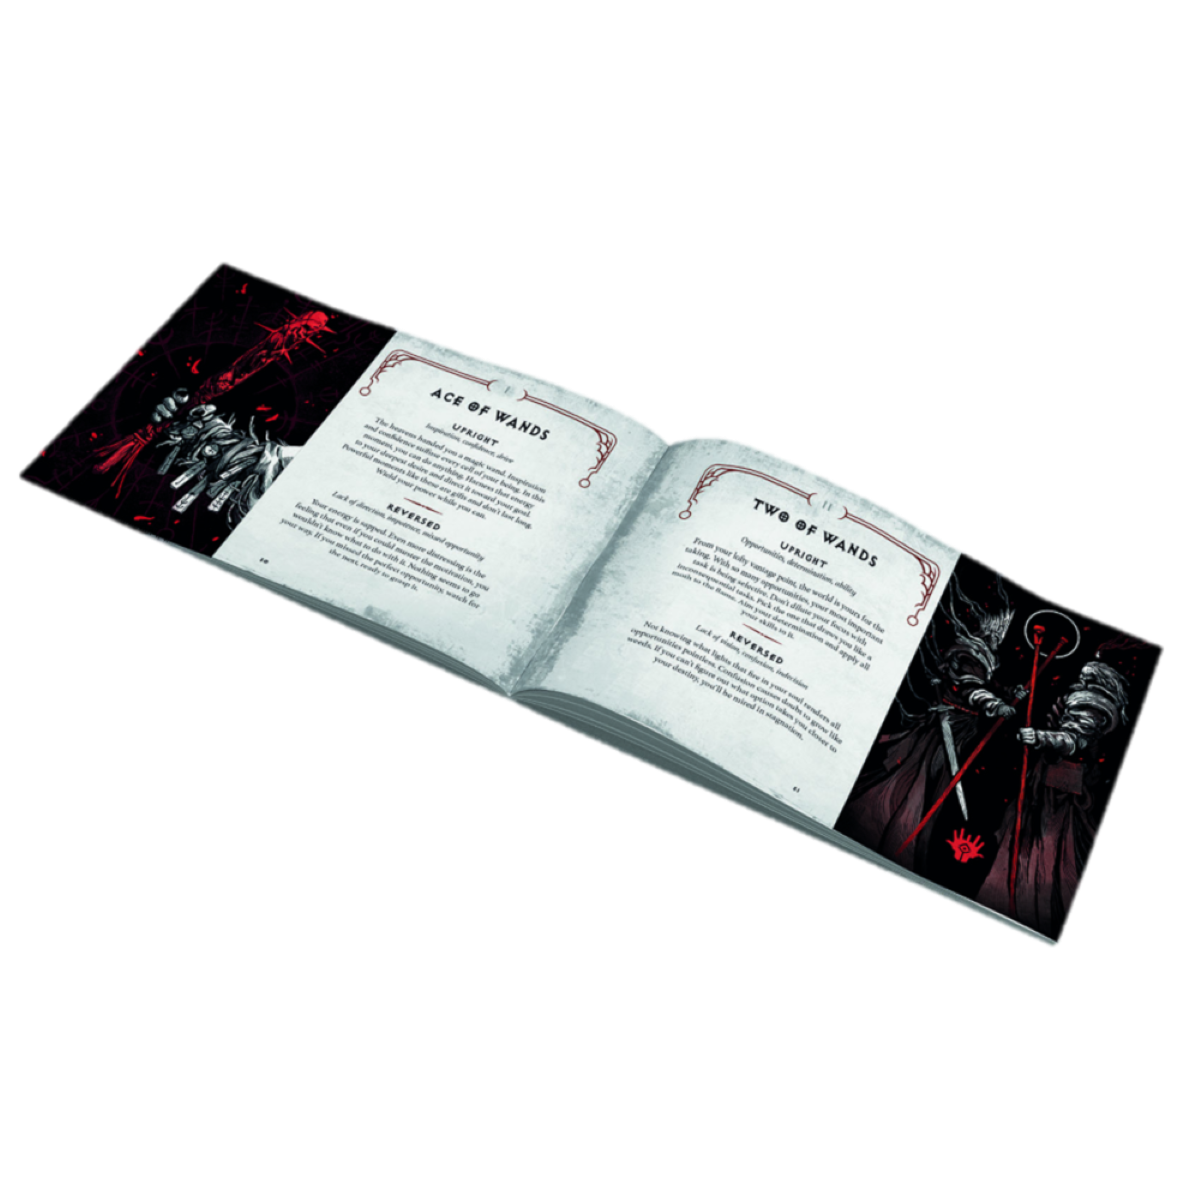 The DIABLO und Tarotdeck Handbuch Blizzard Sanctuary Reiseführer und Deck Diablo: